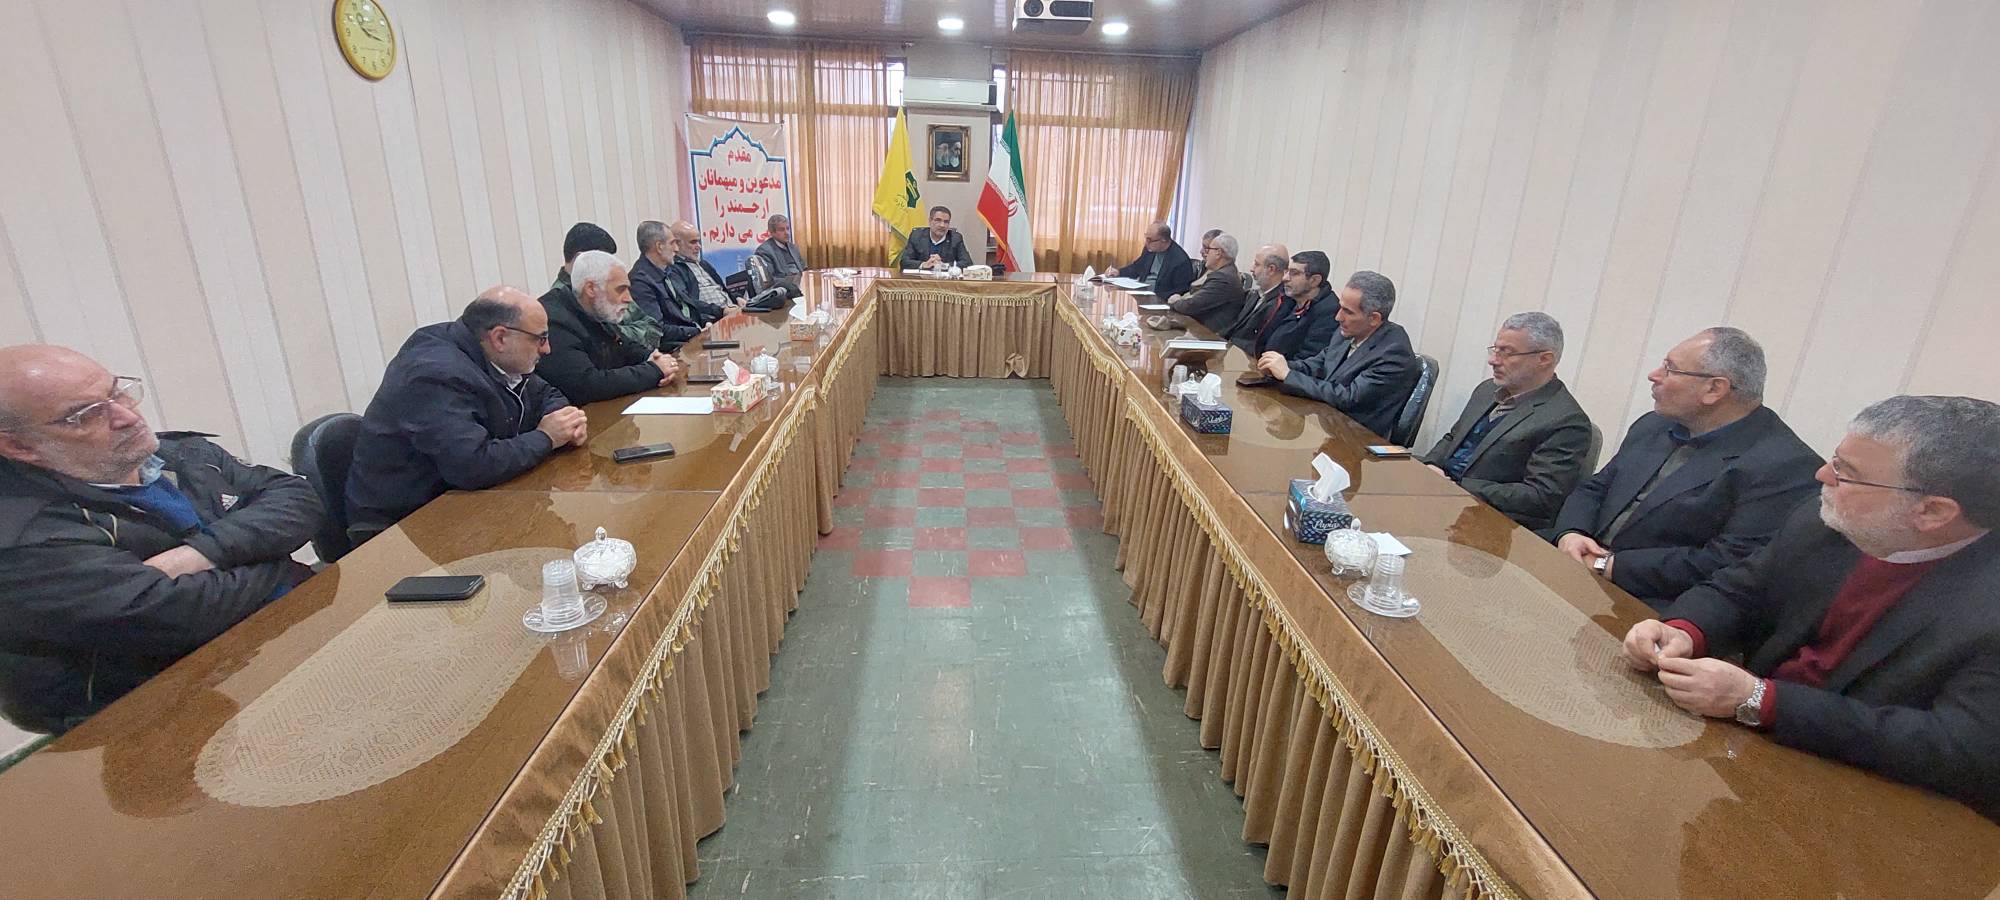 گزارش تصویری / جلسه توجیهی با مدیران ثابت عتبات عالیات استان گیلان